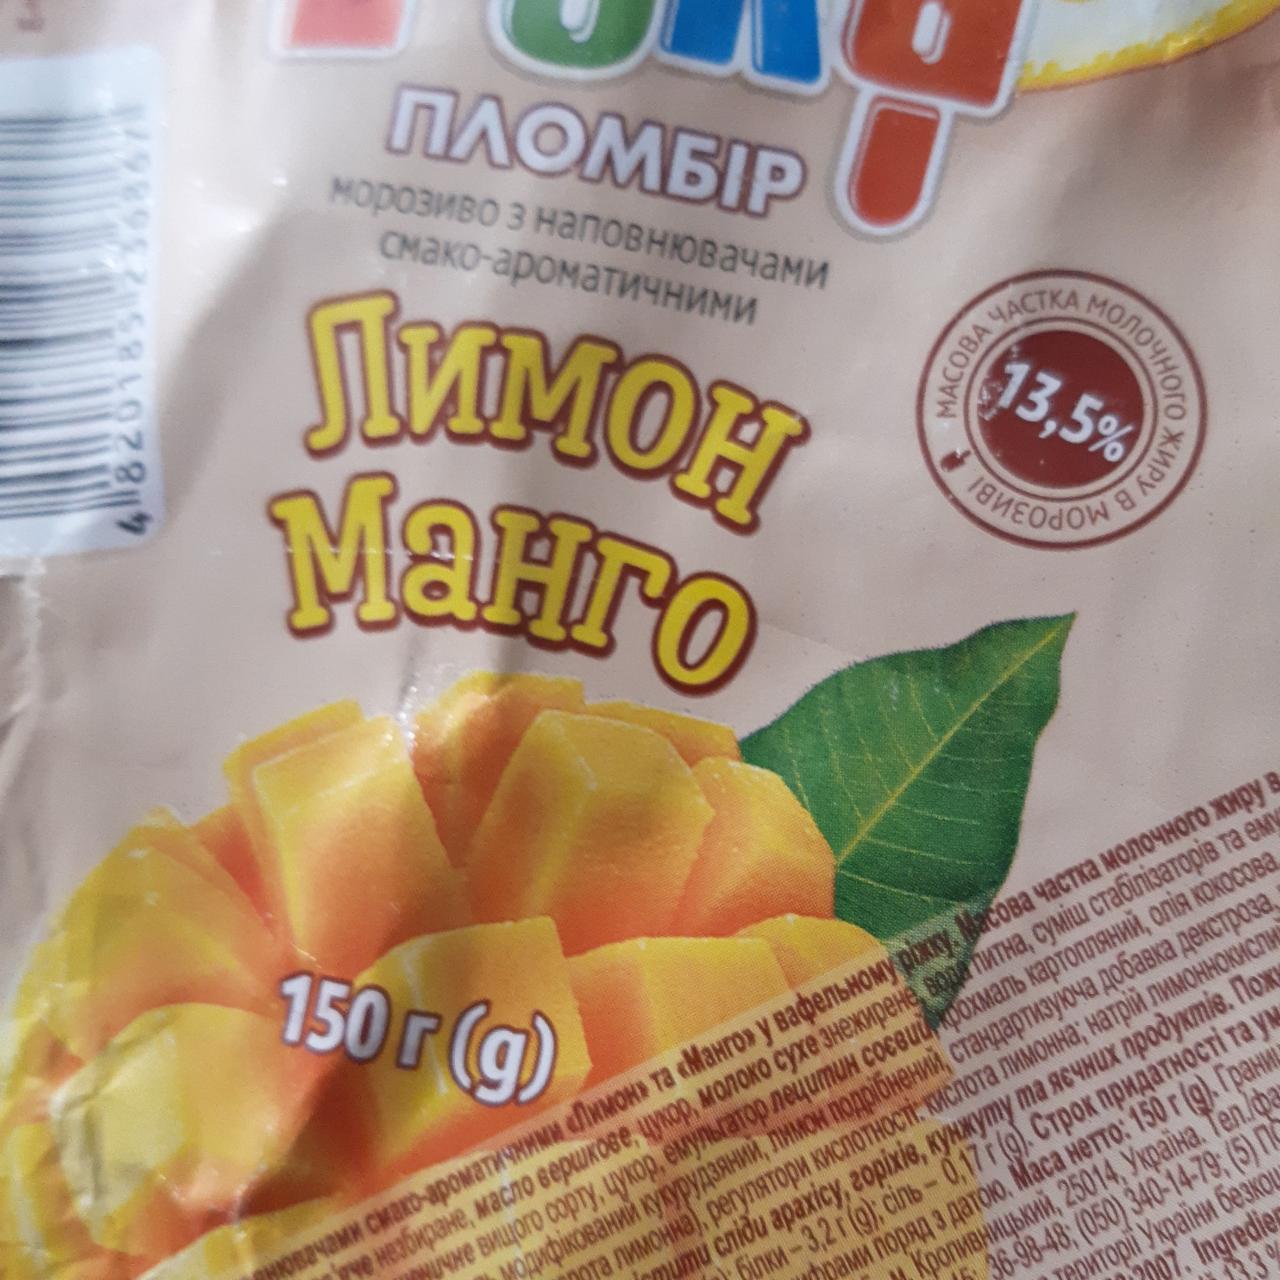 Фото - Мороженое 12% пломбир лимон-манго Laska